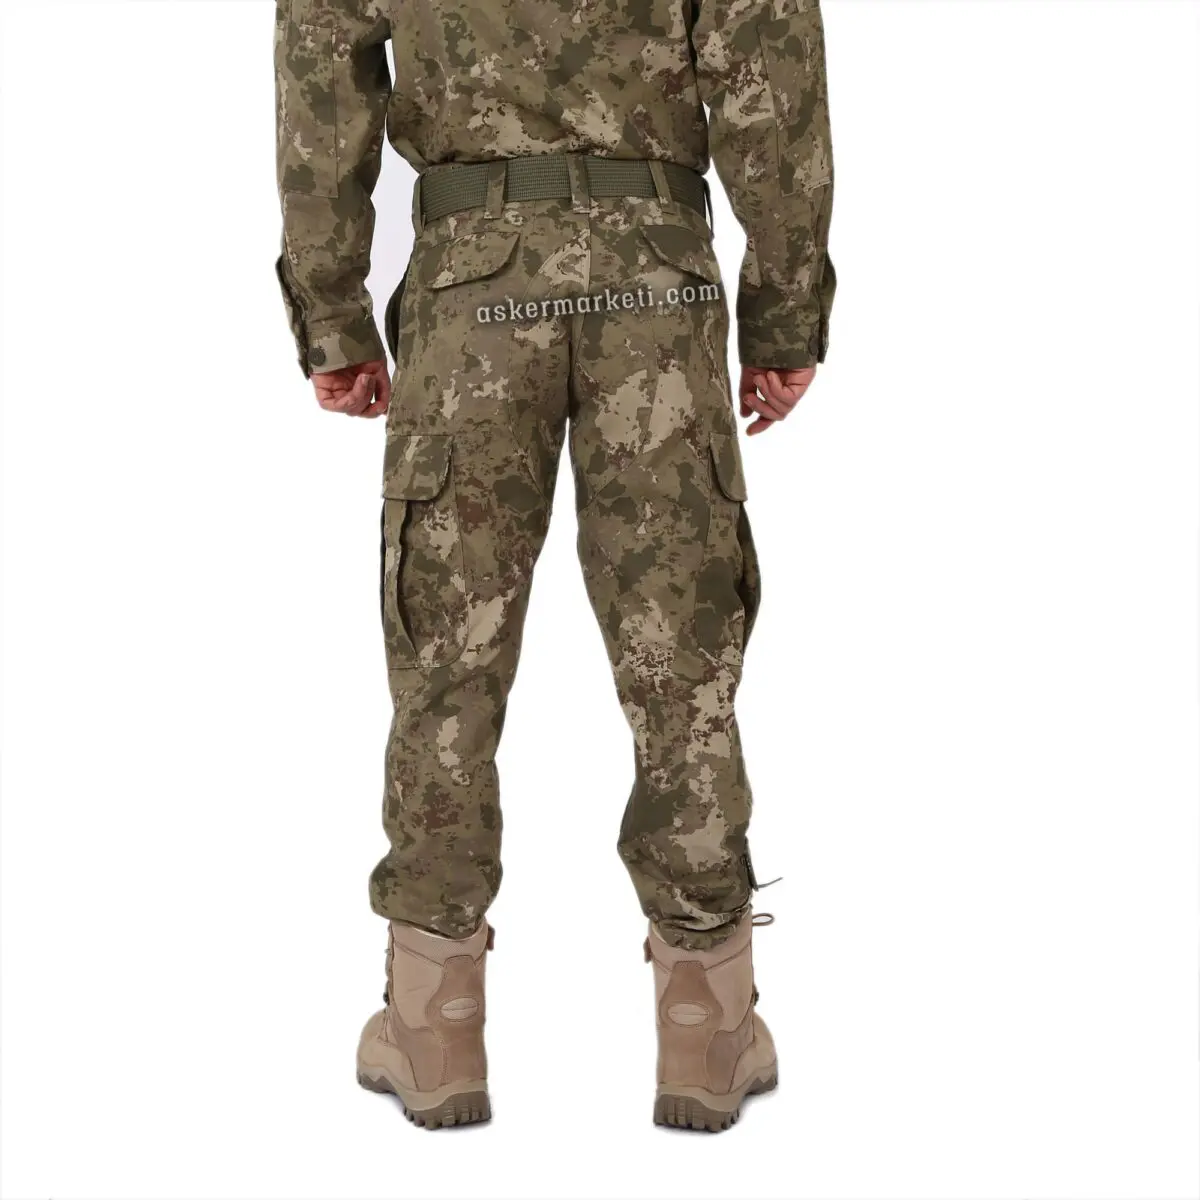 yeni tip askeri kamuflaj pantolon fiyati ink